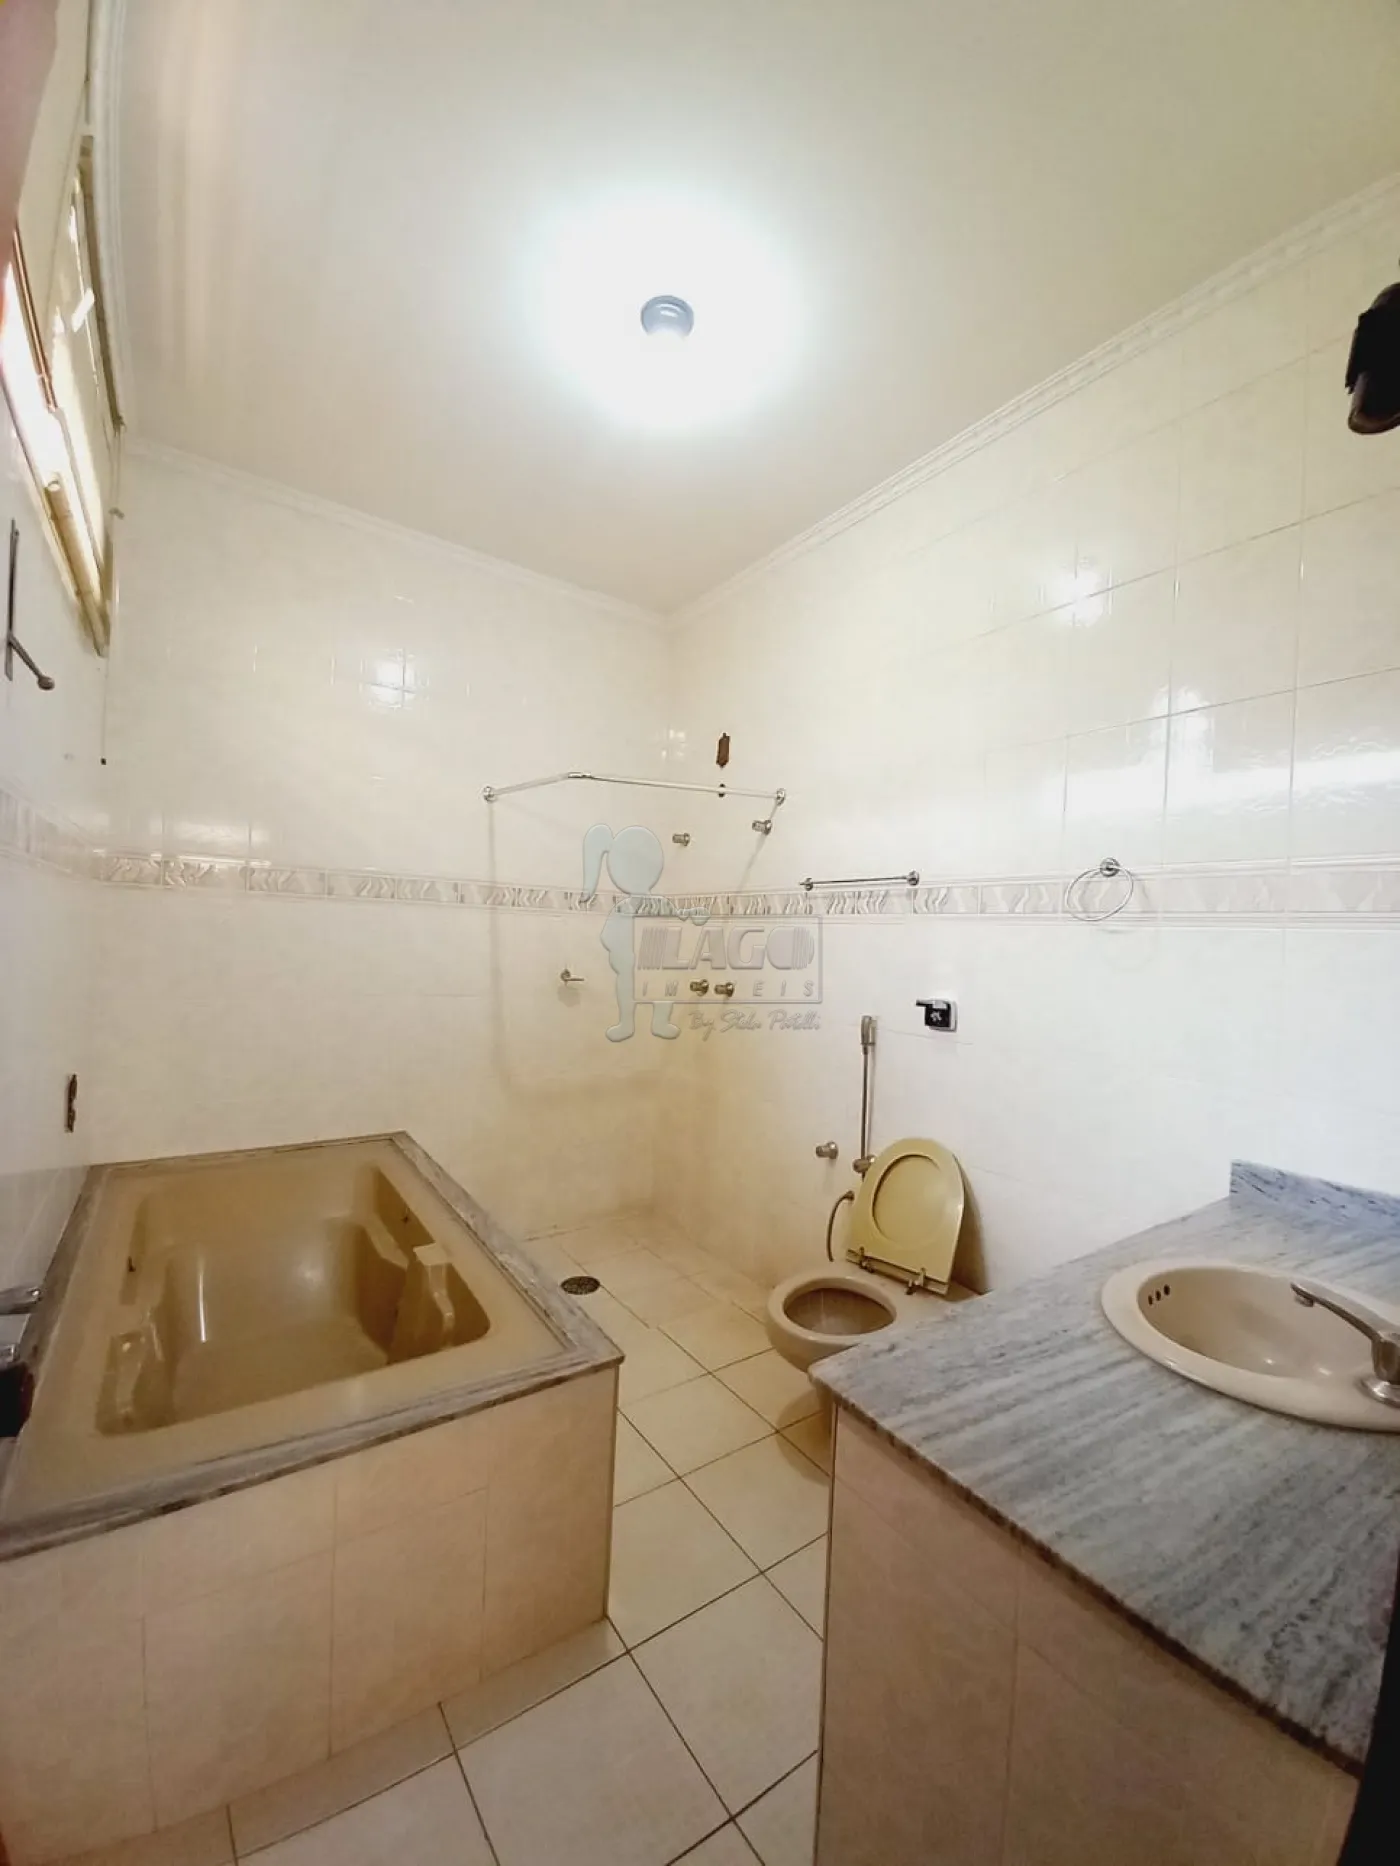 Alugar Casa / Padrão em Ribeirão Preto R$ 4.500,00 - Foto 9